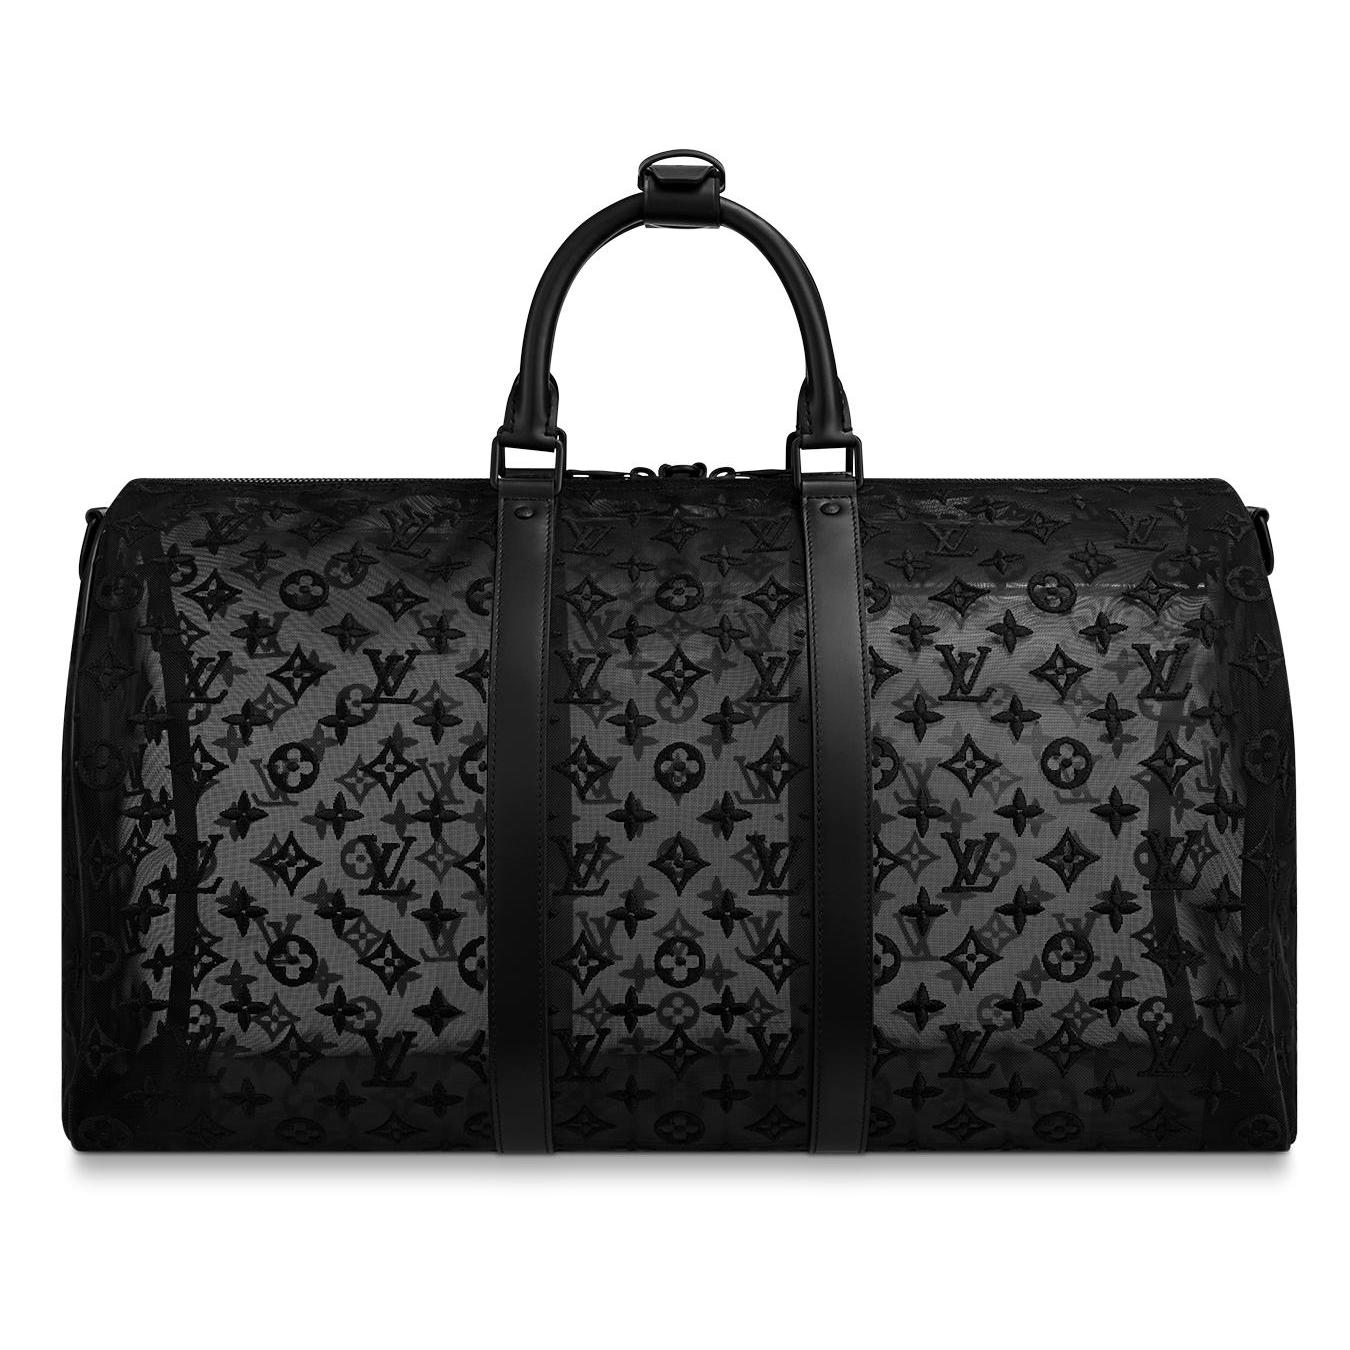 Louis Vuitton See Through Baggage Fees